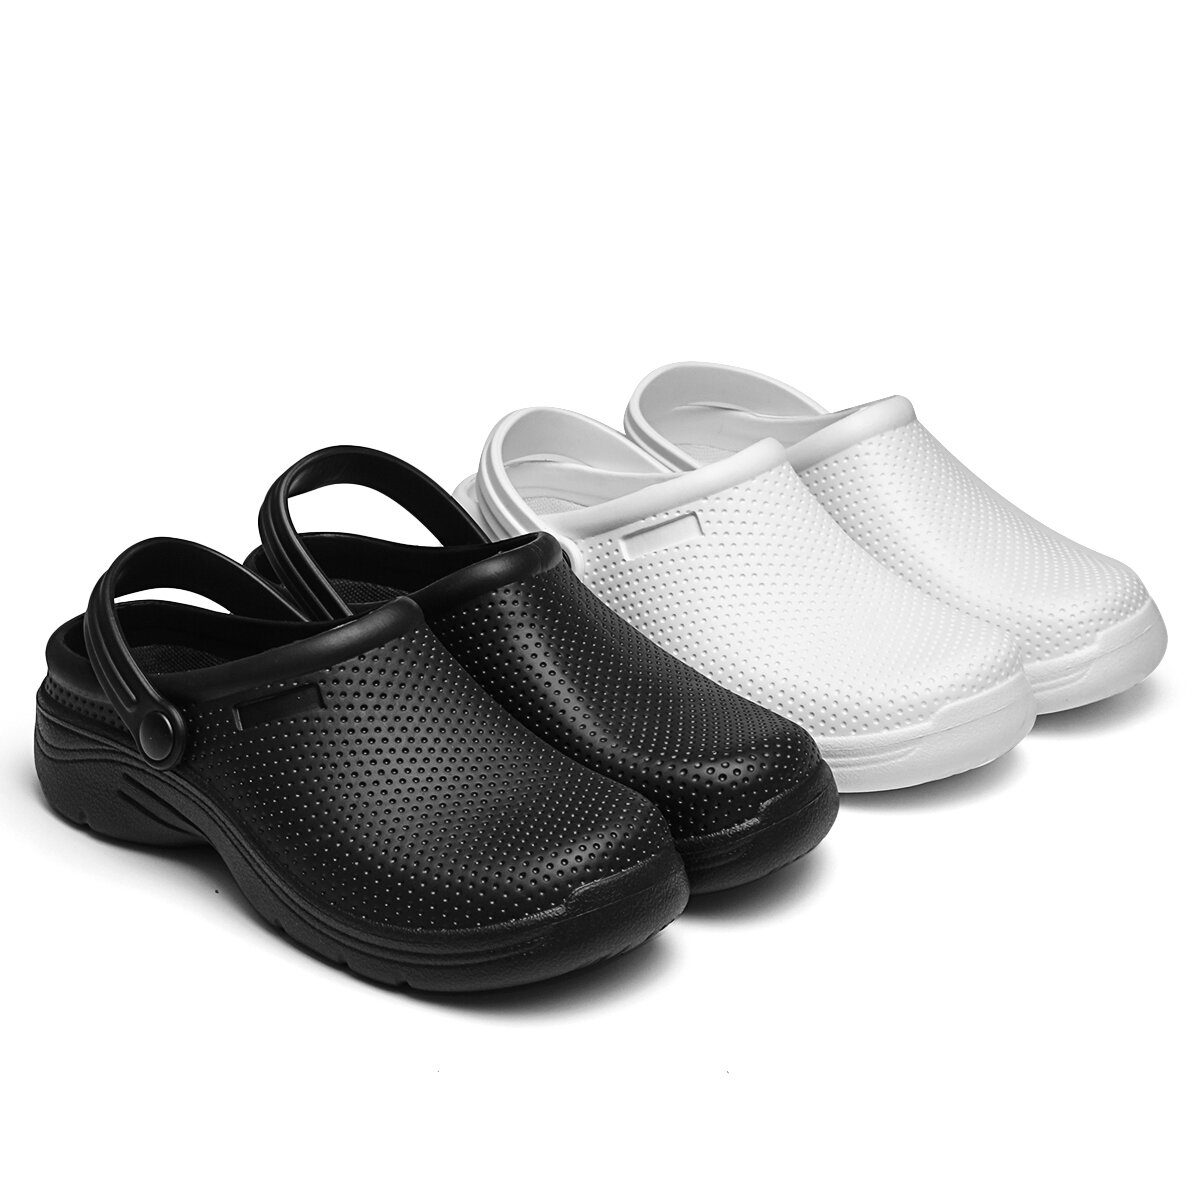 AtreGo EVA Letnie sandały Obuwie ochronne Wodoodporne antypoślizgowe Outdoor Indoor Beach Shoes dla kobiet i mężczyzn